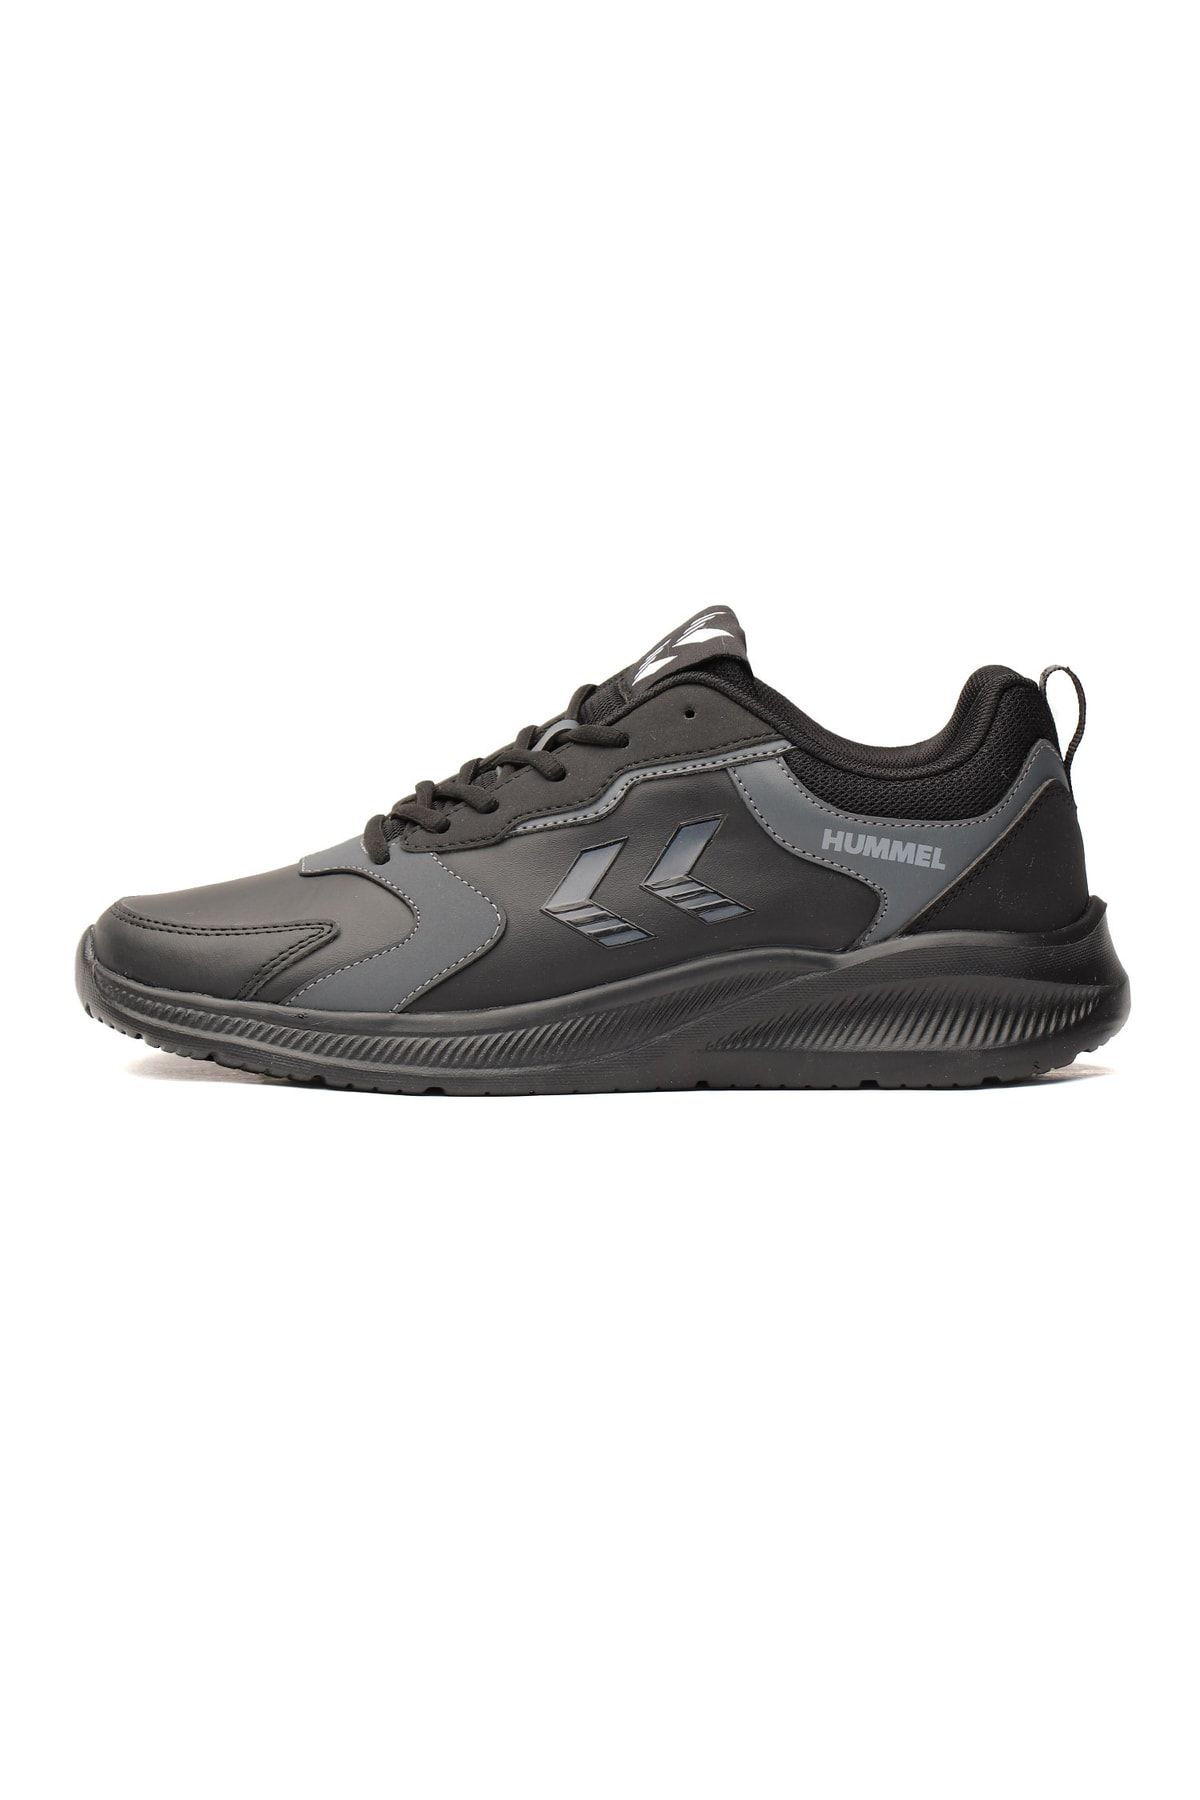 hummel Siyah  Unisex  Spor Ayakkabı 900359-2042